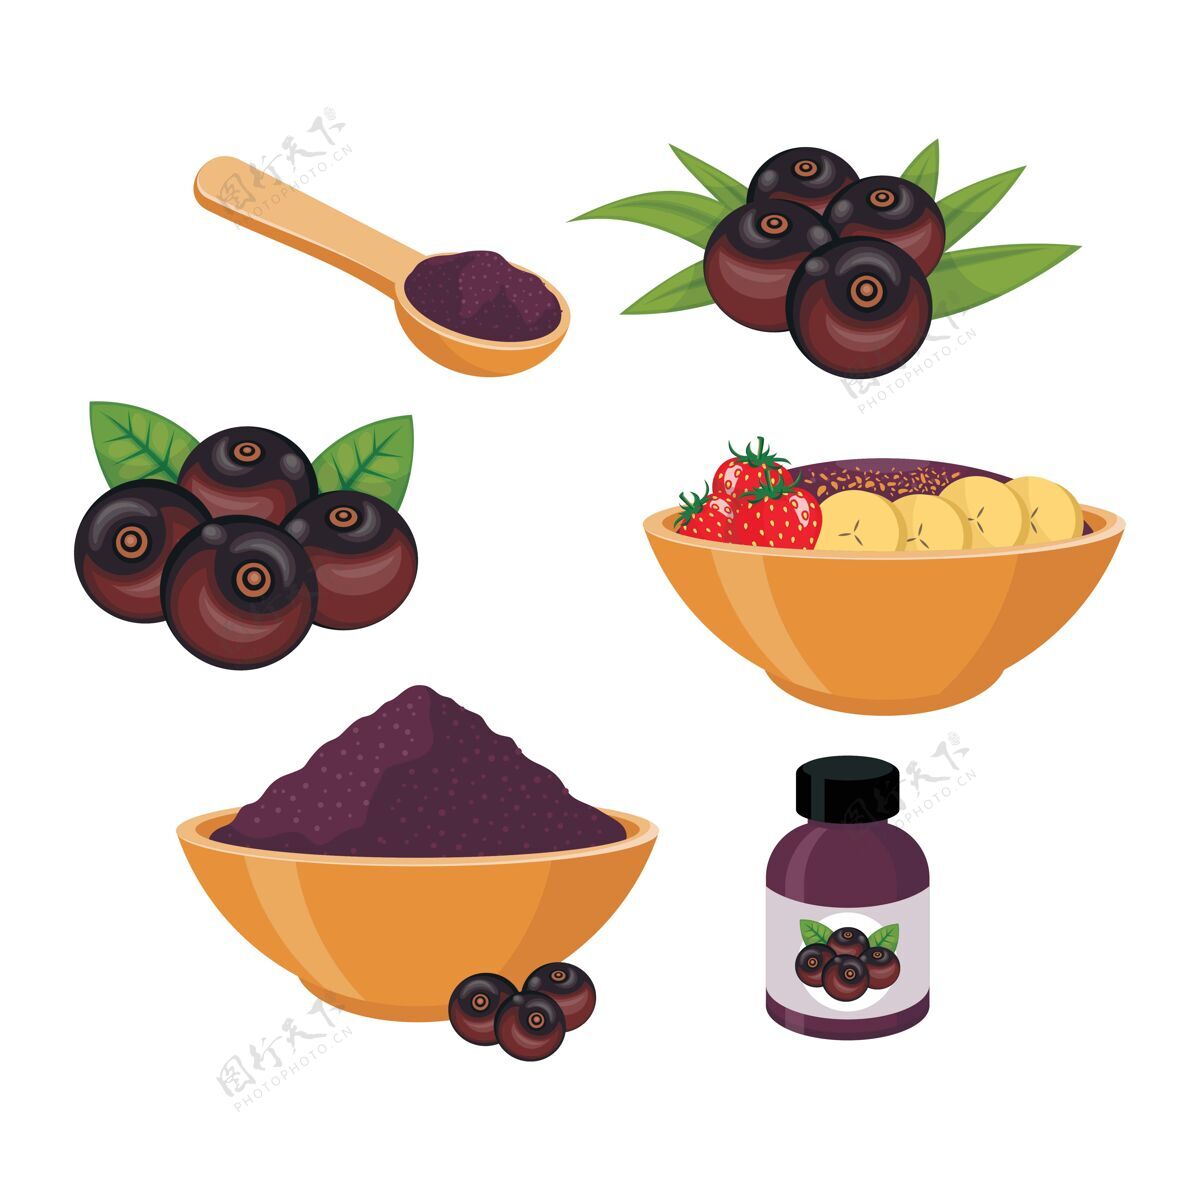 有机阿凯浆果和冰沙在碗的插图冰沙新鲜浆果